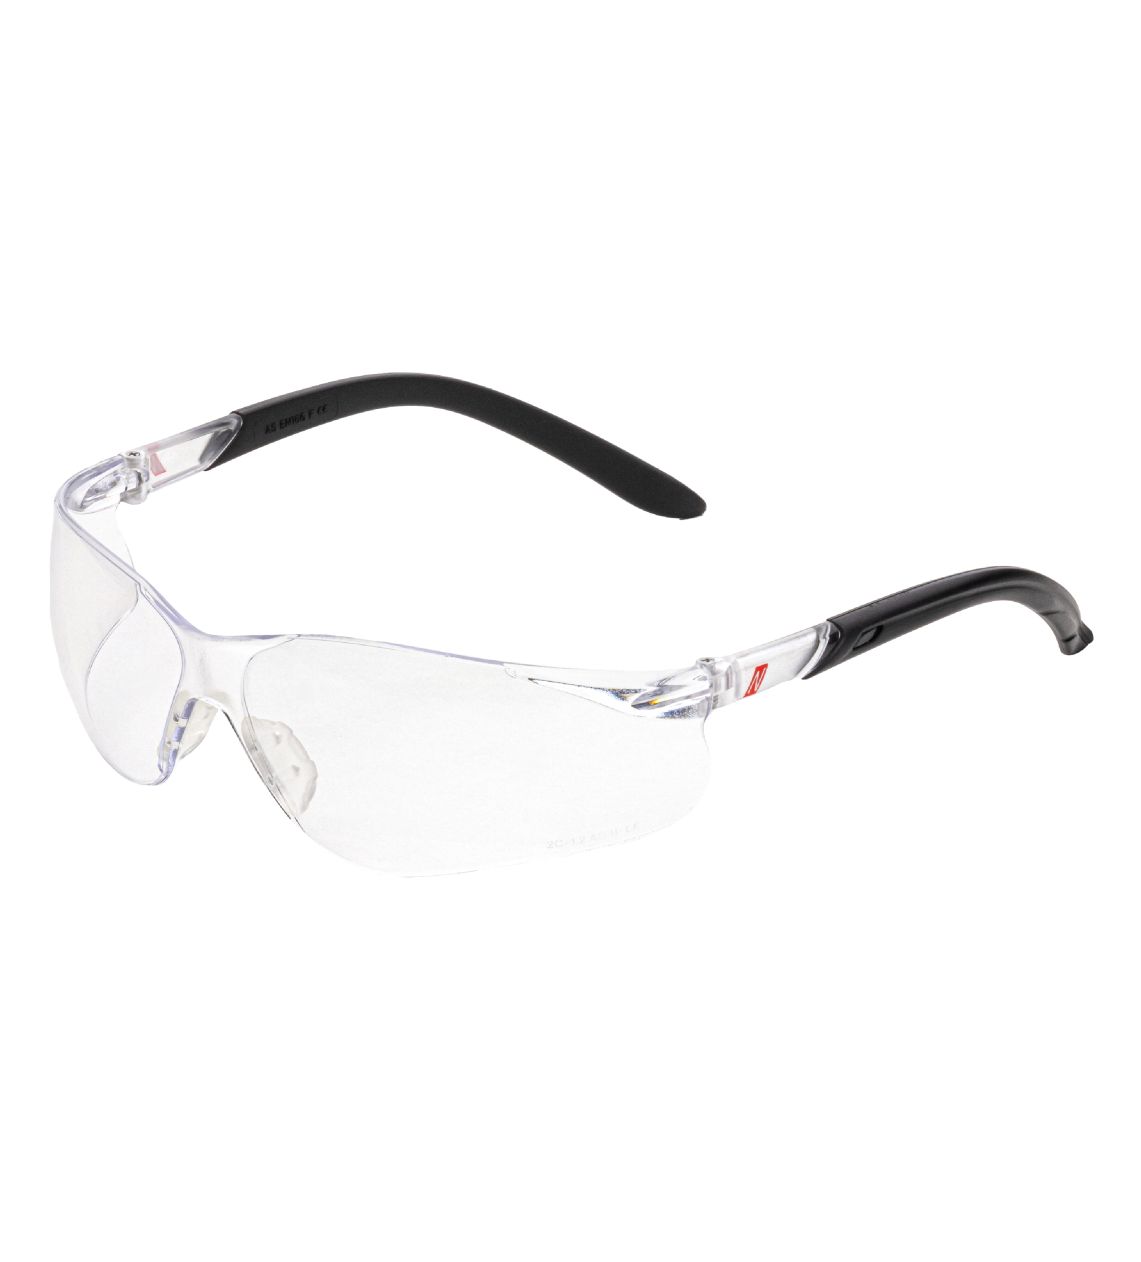 Schutzbrille, 9010 schwarz / transparent, EN 166